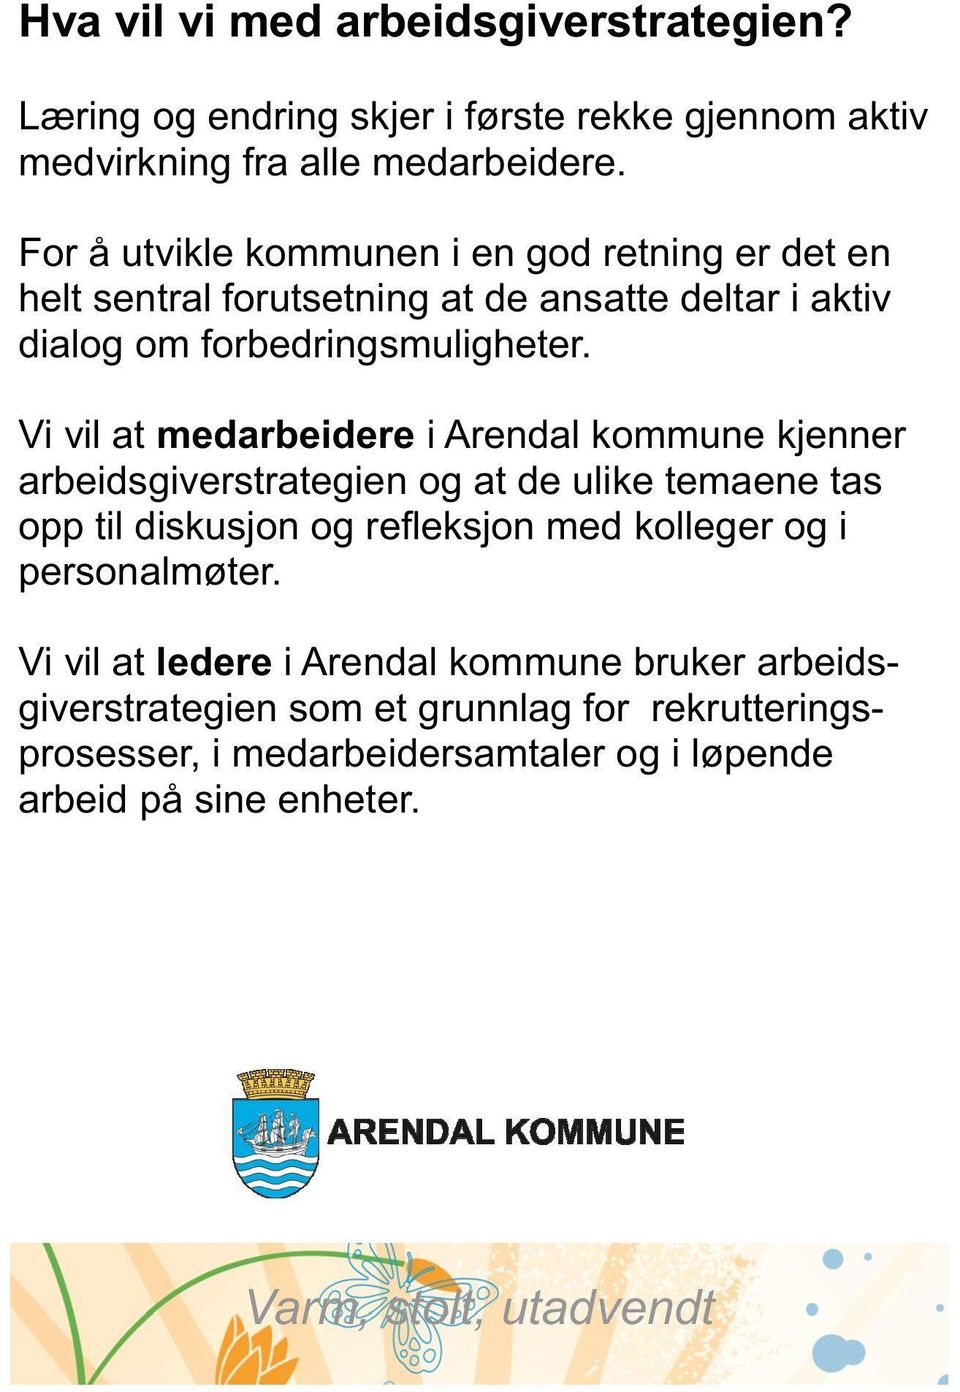 Vi vil at medarbeidere i Arendal kommune kjenner arbeidsgiverstrategien og at de ulike temaene tas opp til diskusjon og refleksjon med kolleger og i